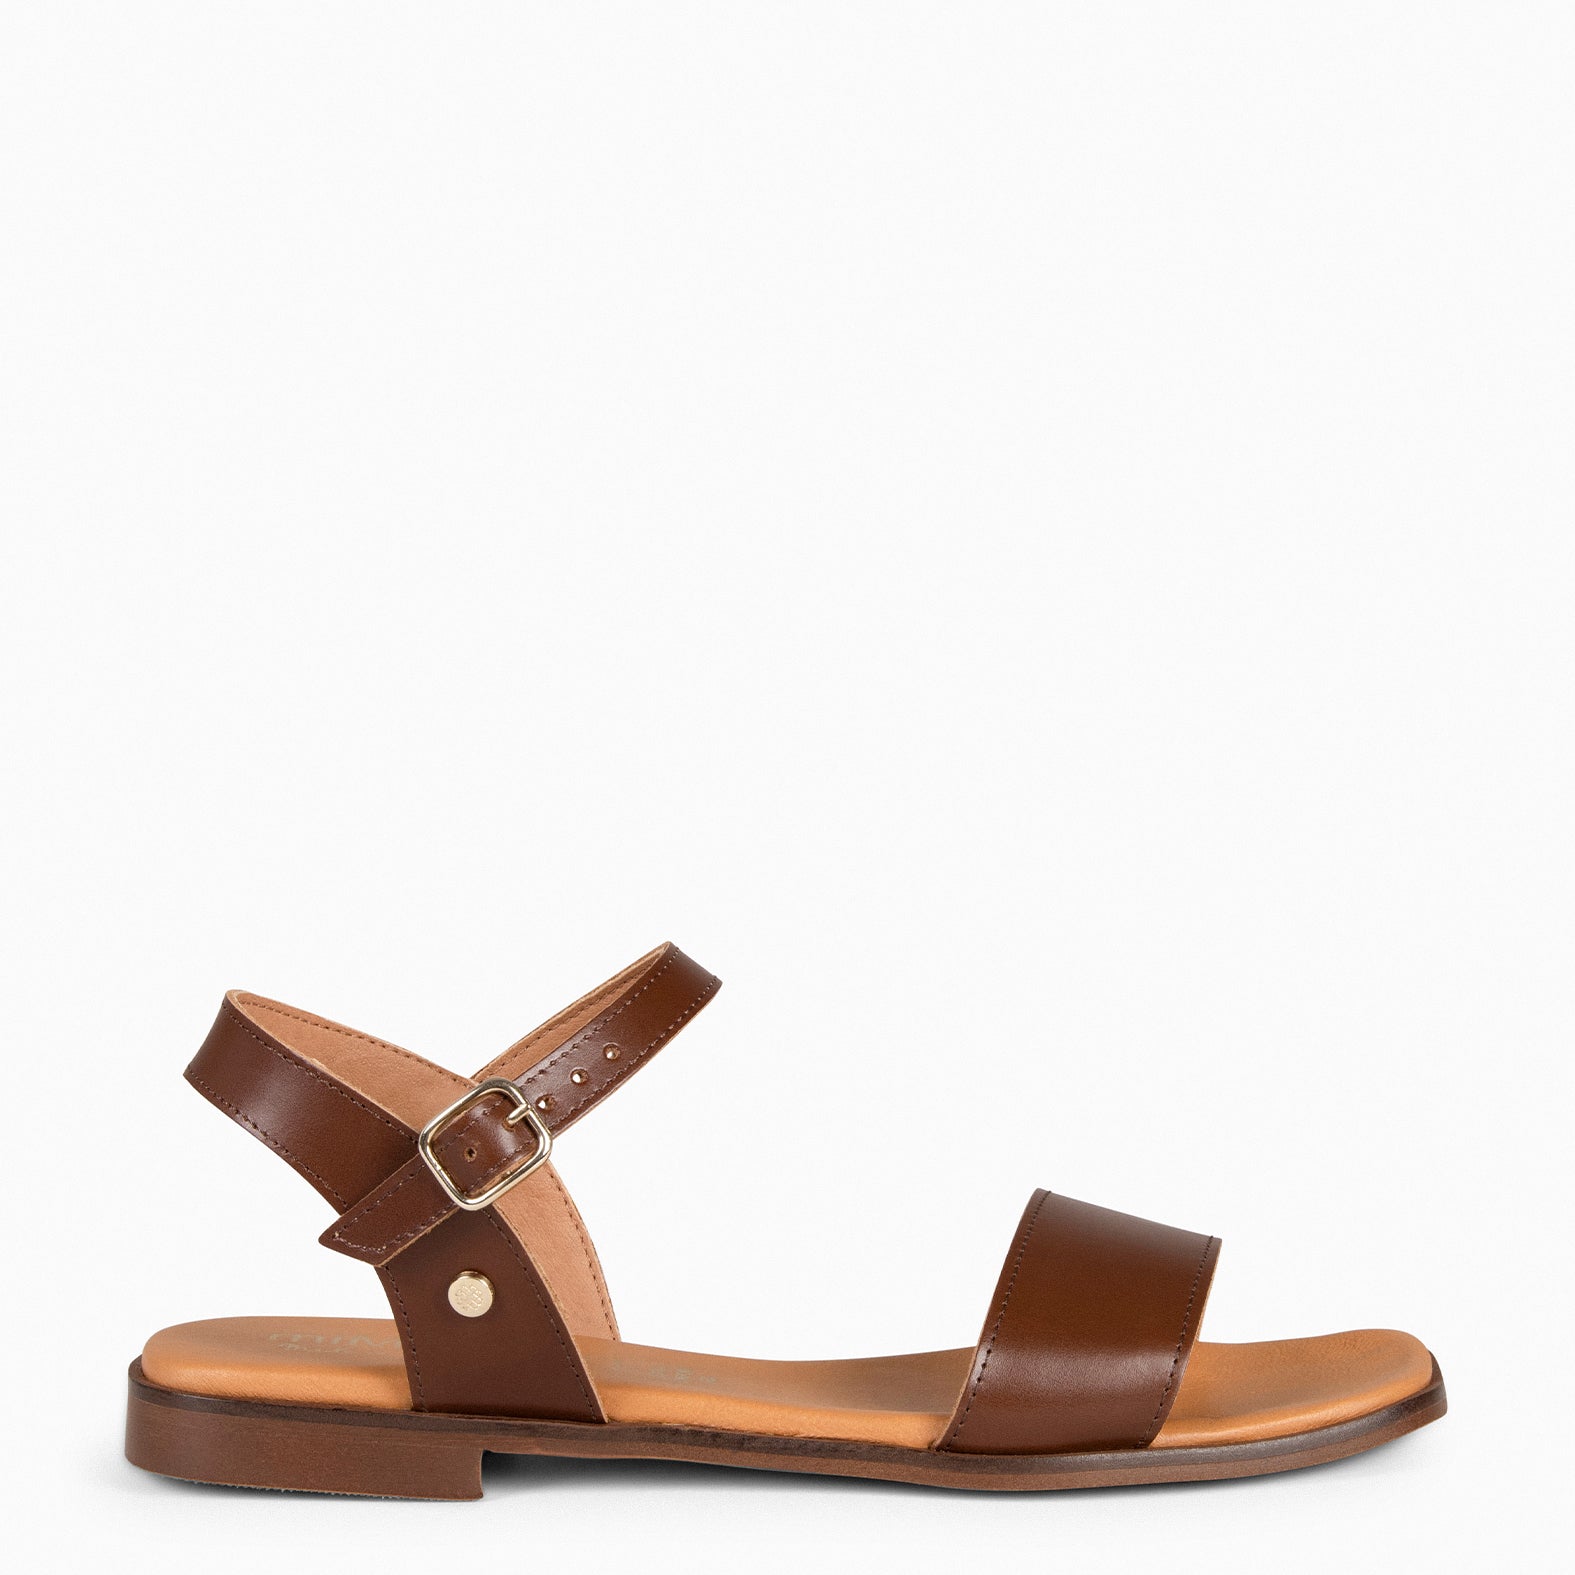 SANTORINI - BROWN Flat Sandals